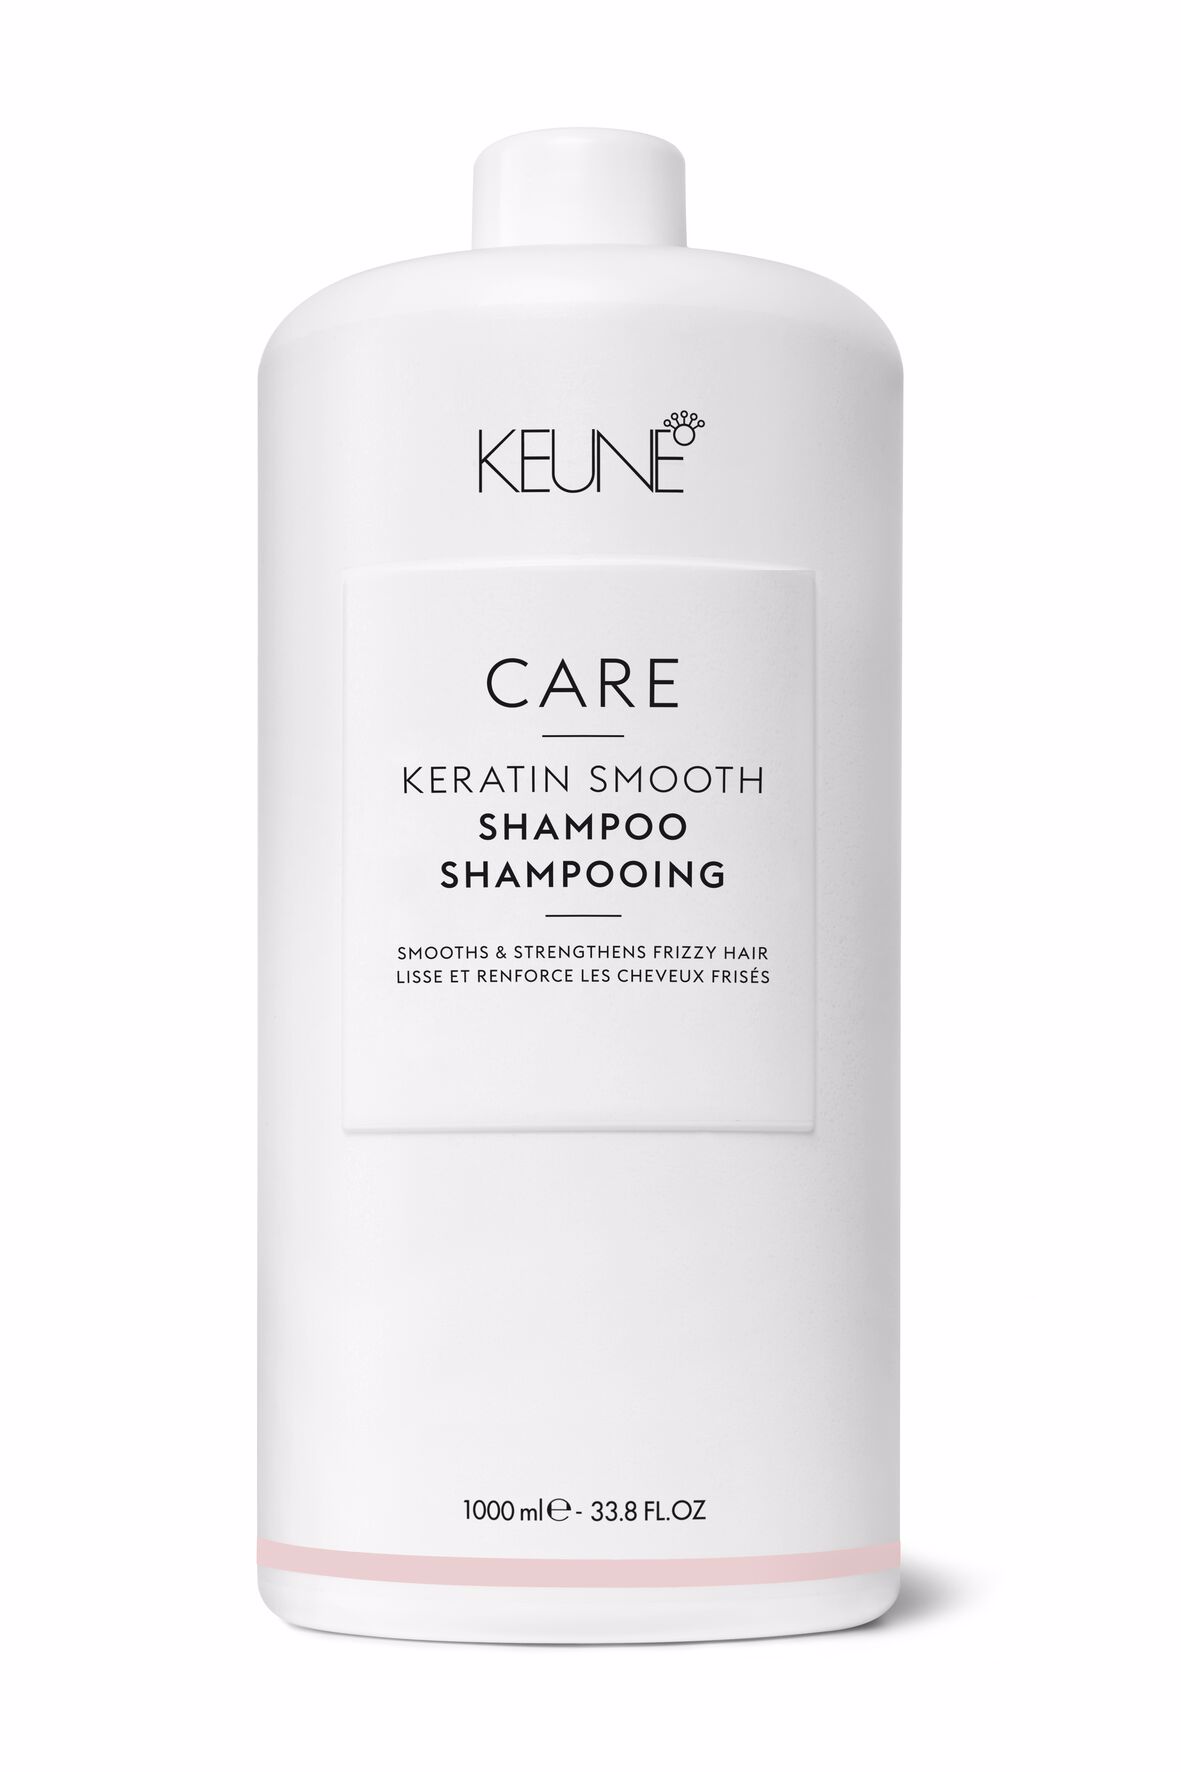 Rêvez-vous de cheveux lisses et sans frisottis ? Essayez notre Care Keratin Smooth Shampoo. Ce produit capillaire nourrit, hydrate et renforce les cheveux secs. Disponible sur keune.ch.